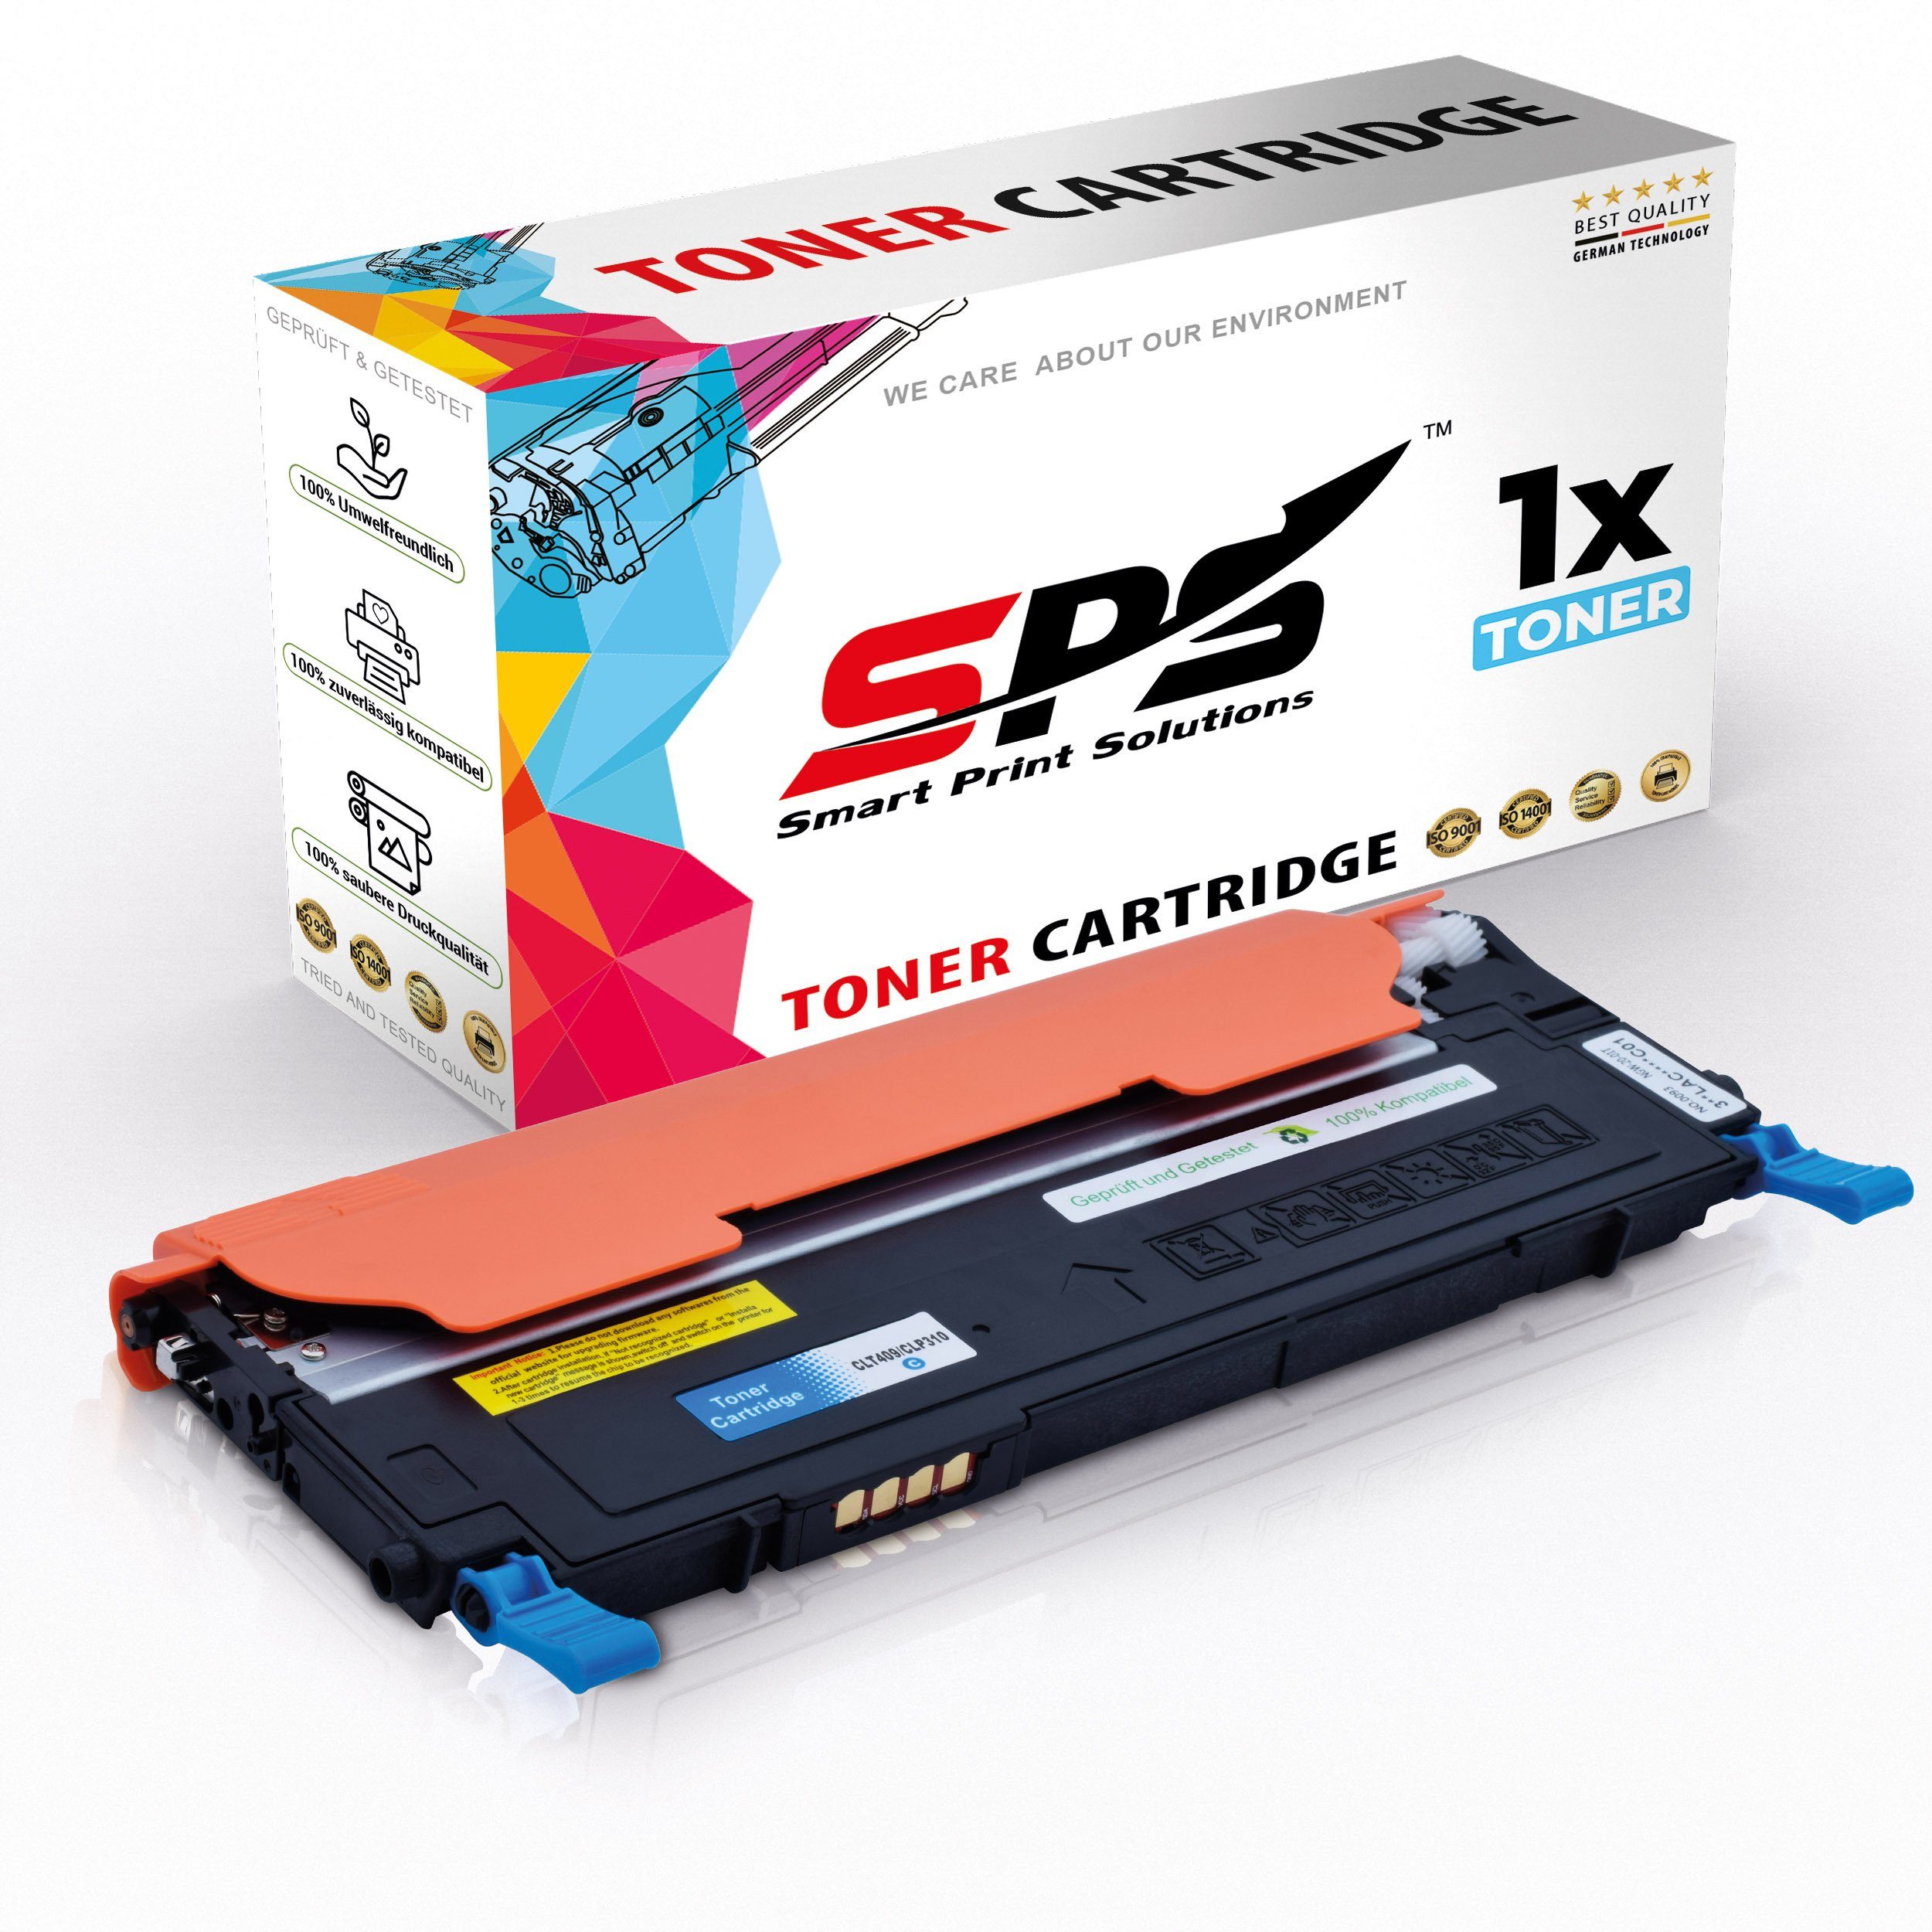 SPS Tonerkartusche Kompatibel für Samsung CLX-3175FW C4092 CLT-C409S, (1er Pack)